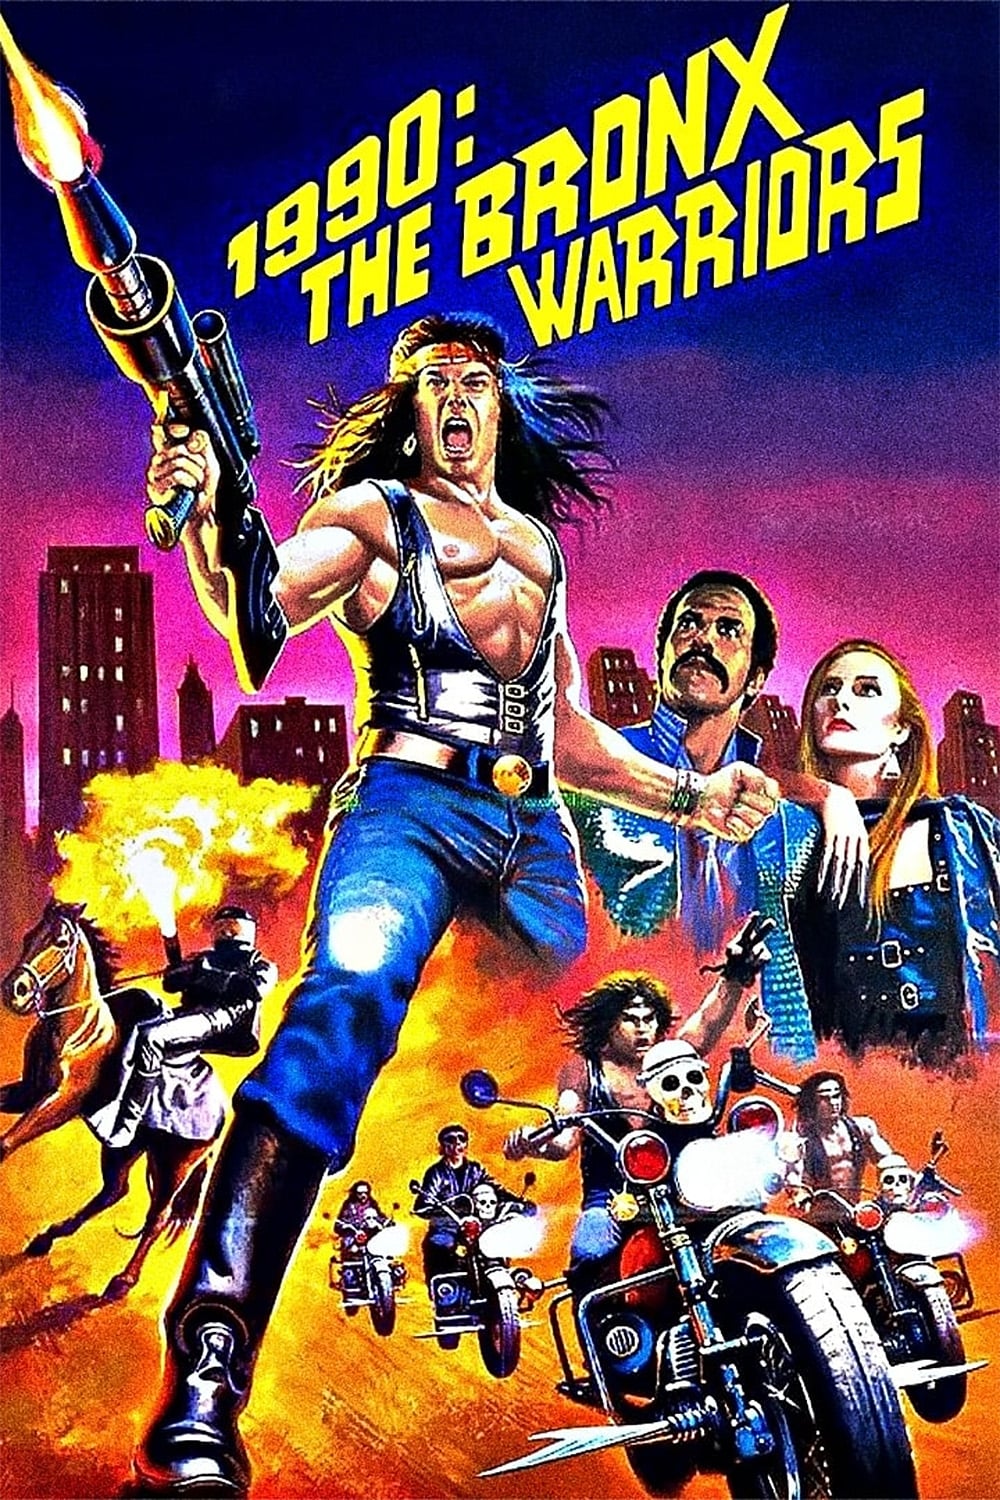 Os Guerreiros do Bronx (1982)